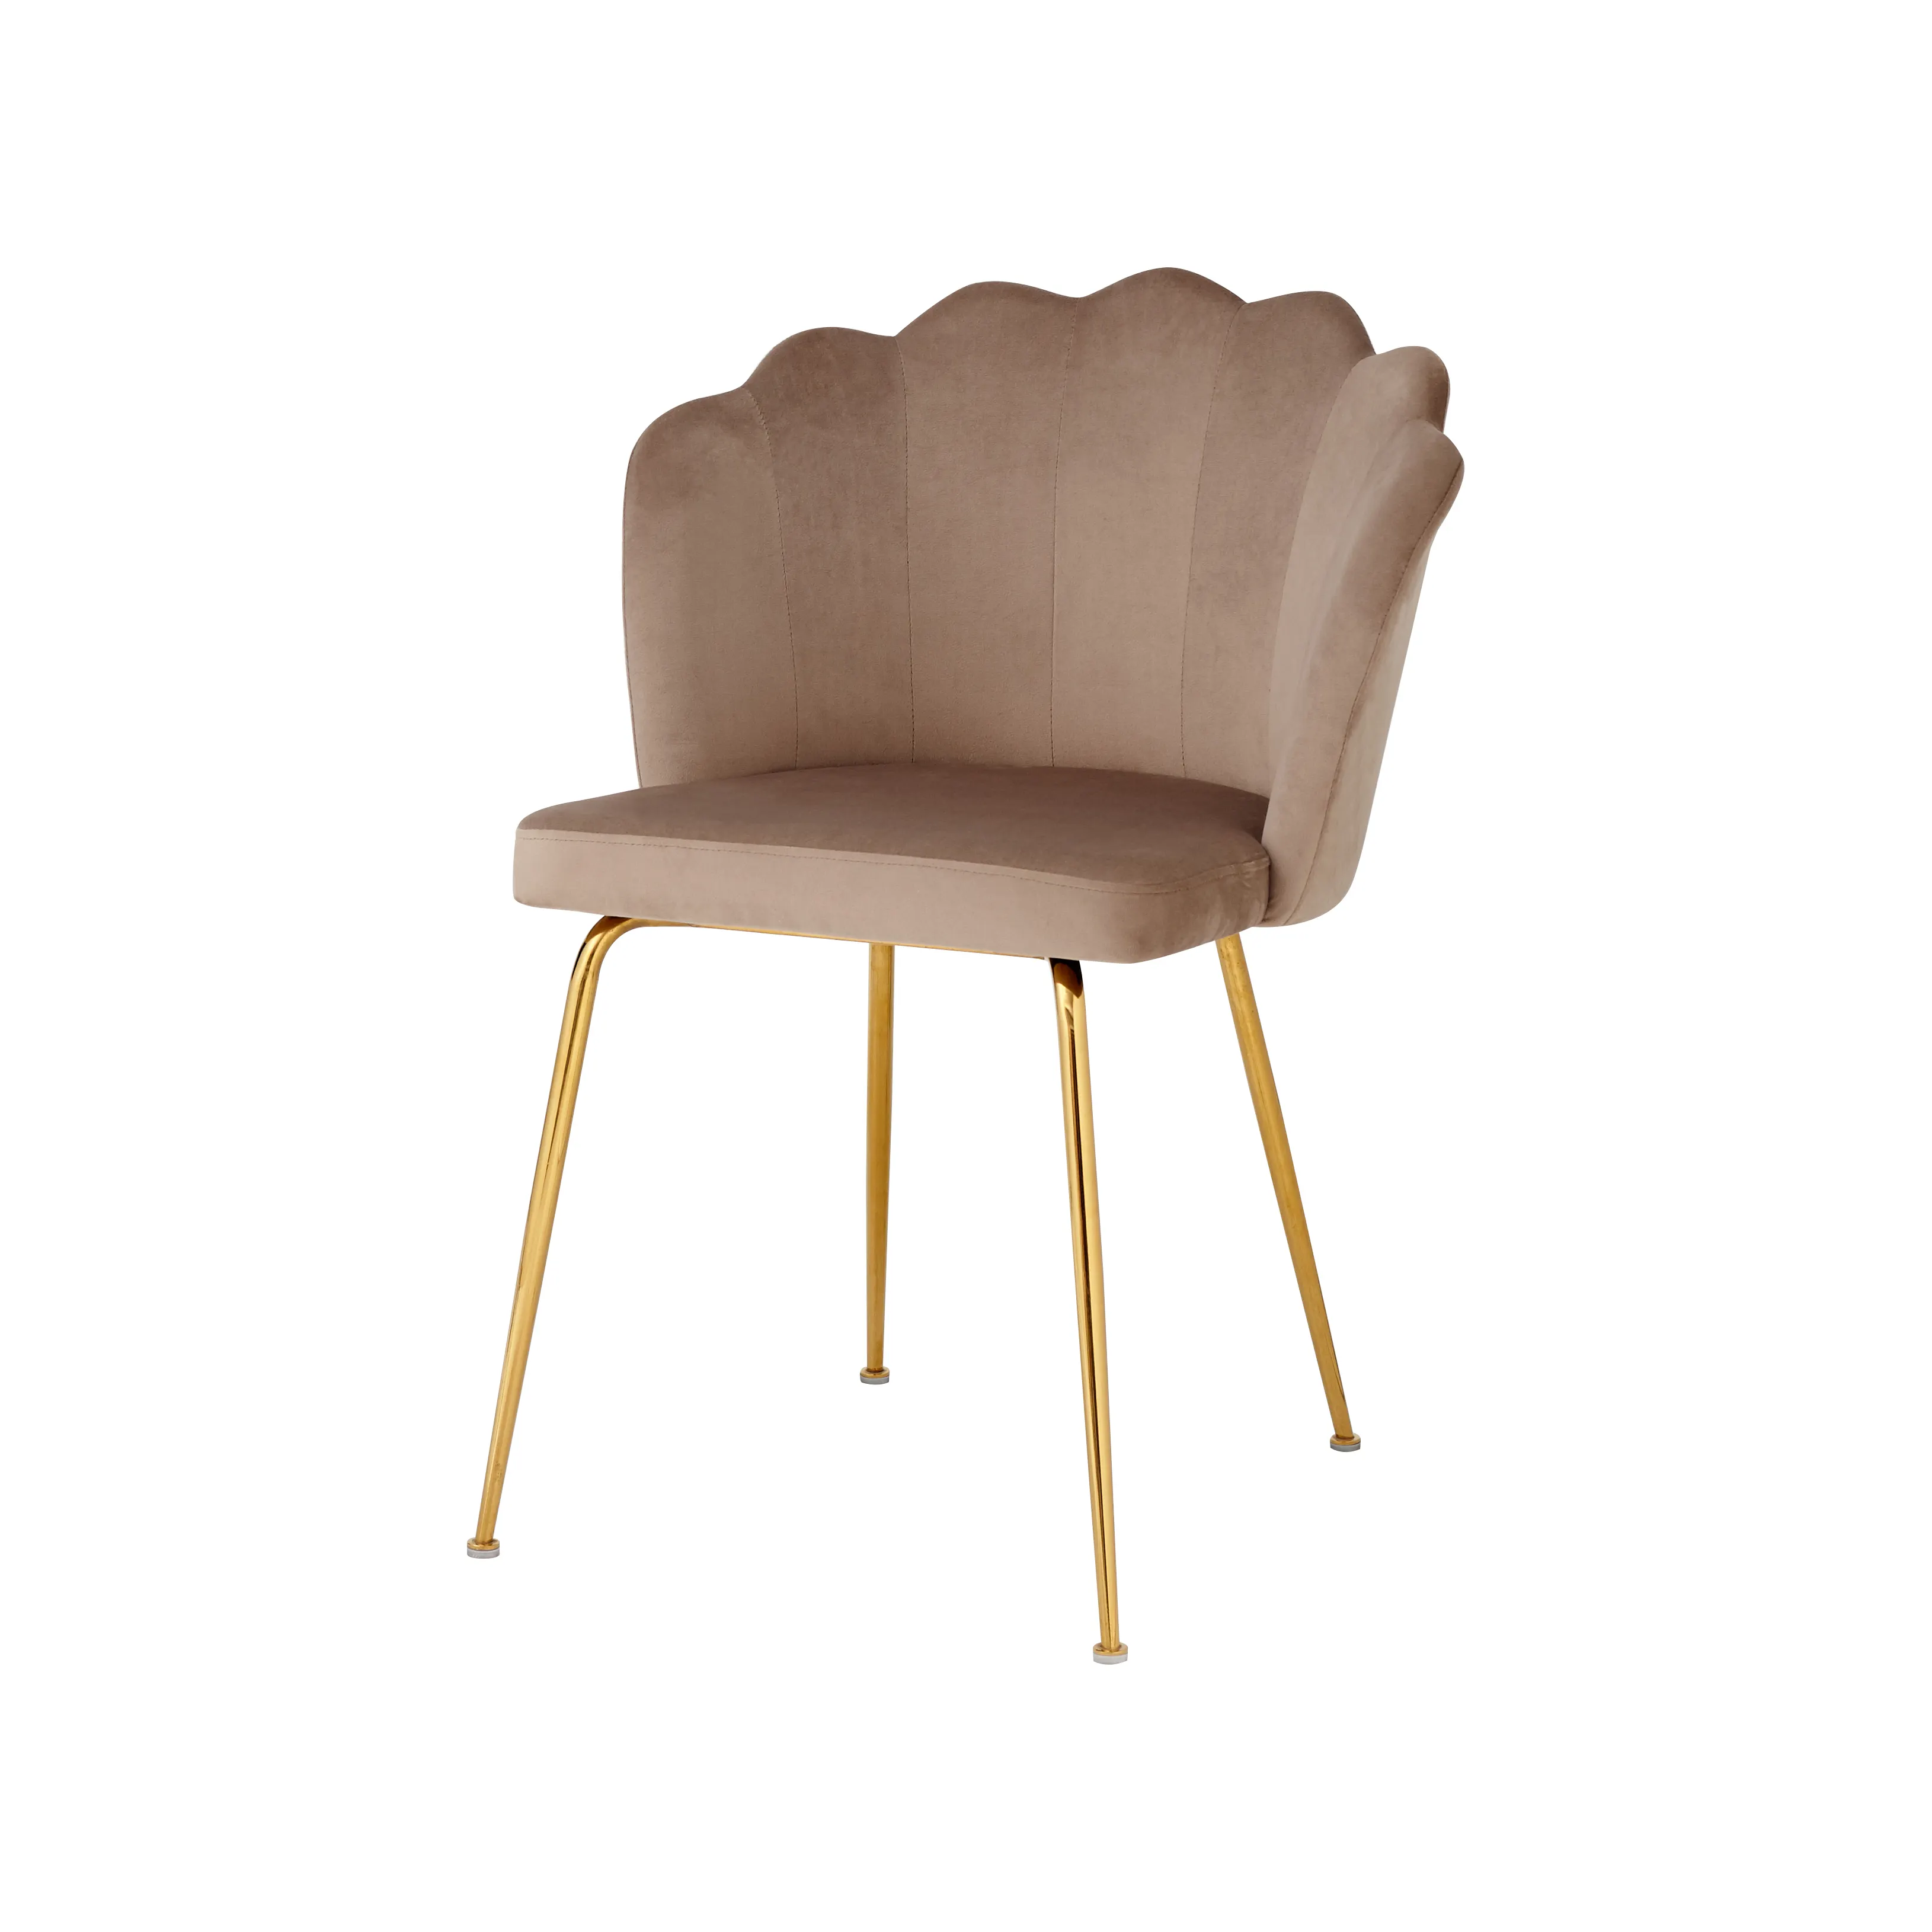 Wbert 현대적인 디자인 단단한 나무 식당 의자 레트로 프랑스 홈 호텔 카페 등받이 의자 체류 프랑스 복고풍 식당 의자